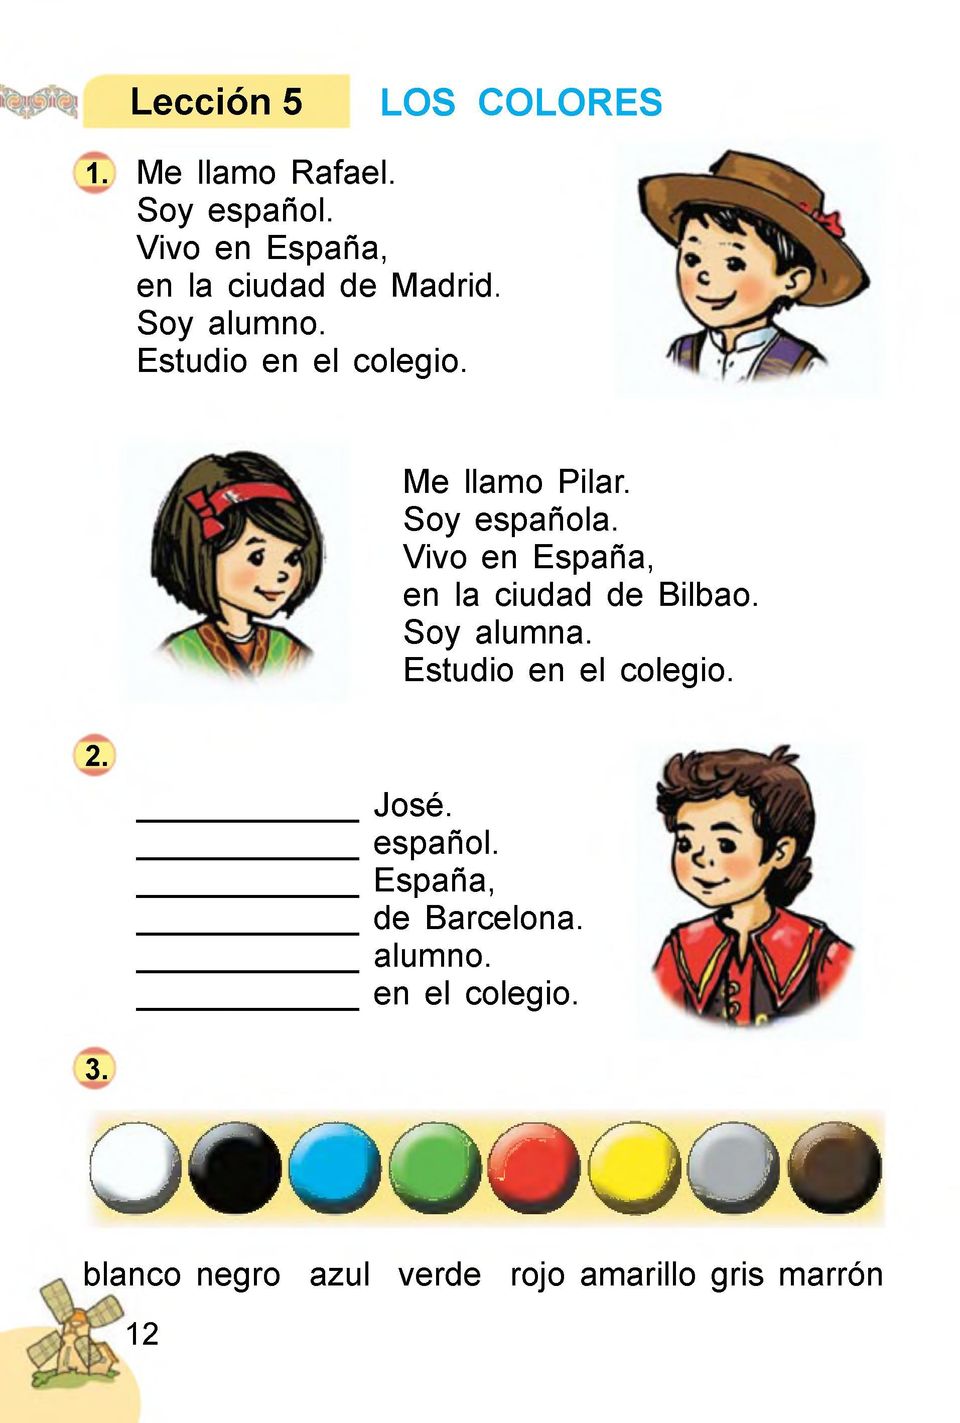 Soy española. Vivo en España, en la ciudad de Bilbao. Soy alumna. Estudio en el colegio. 2.